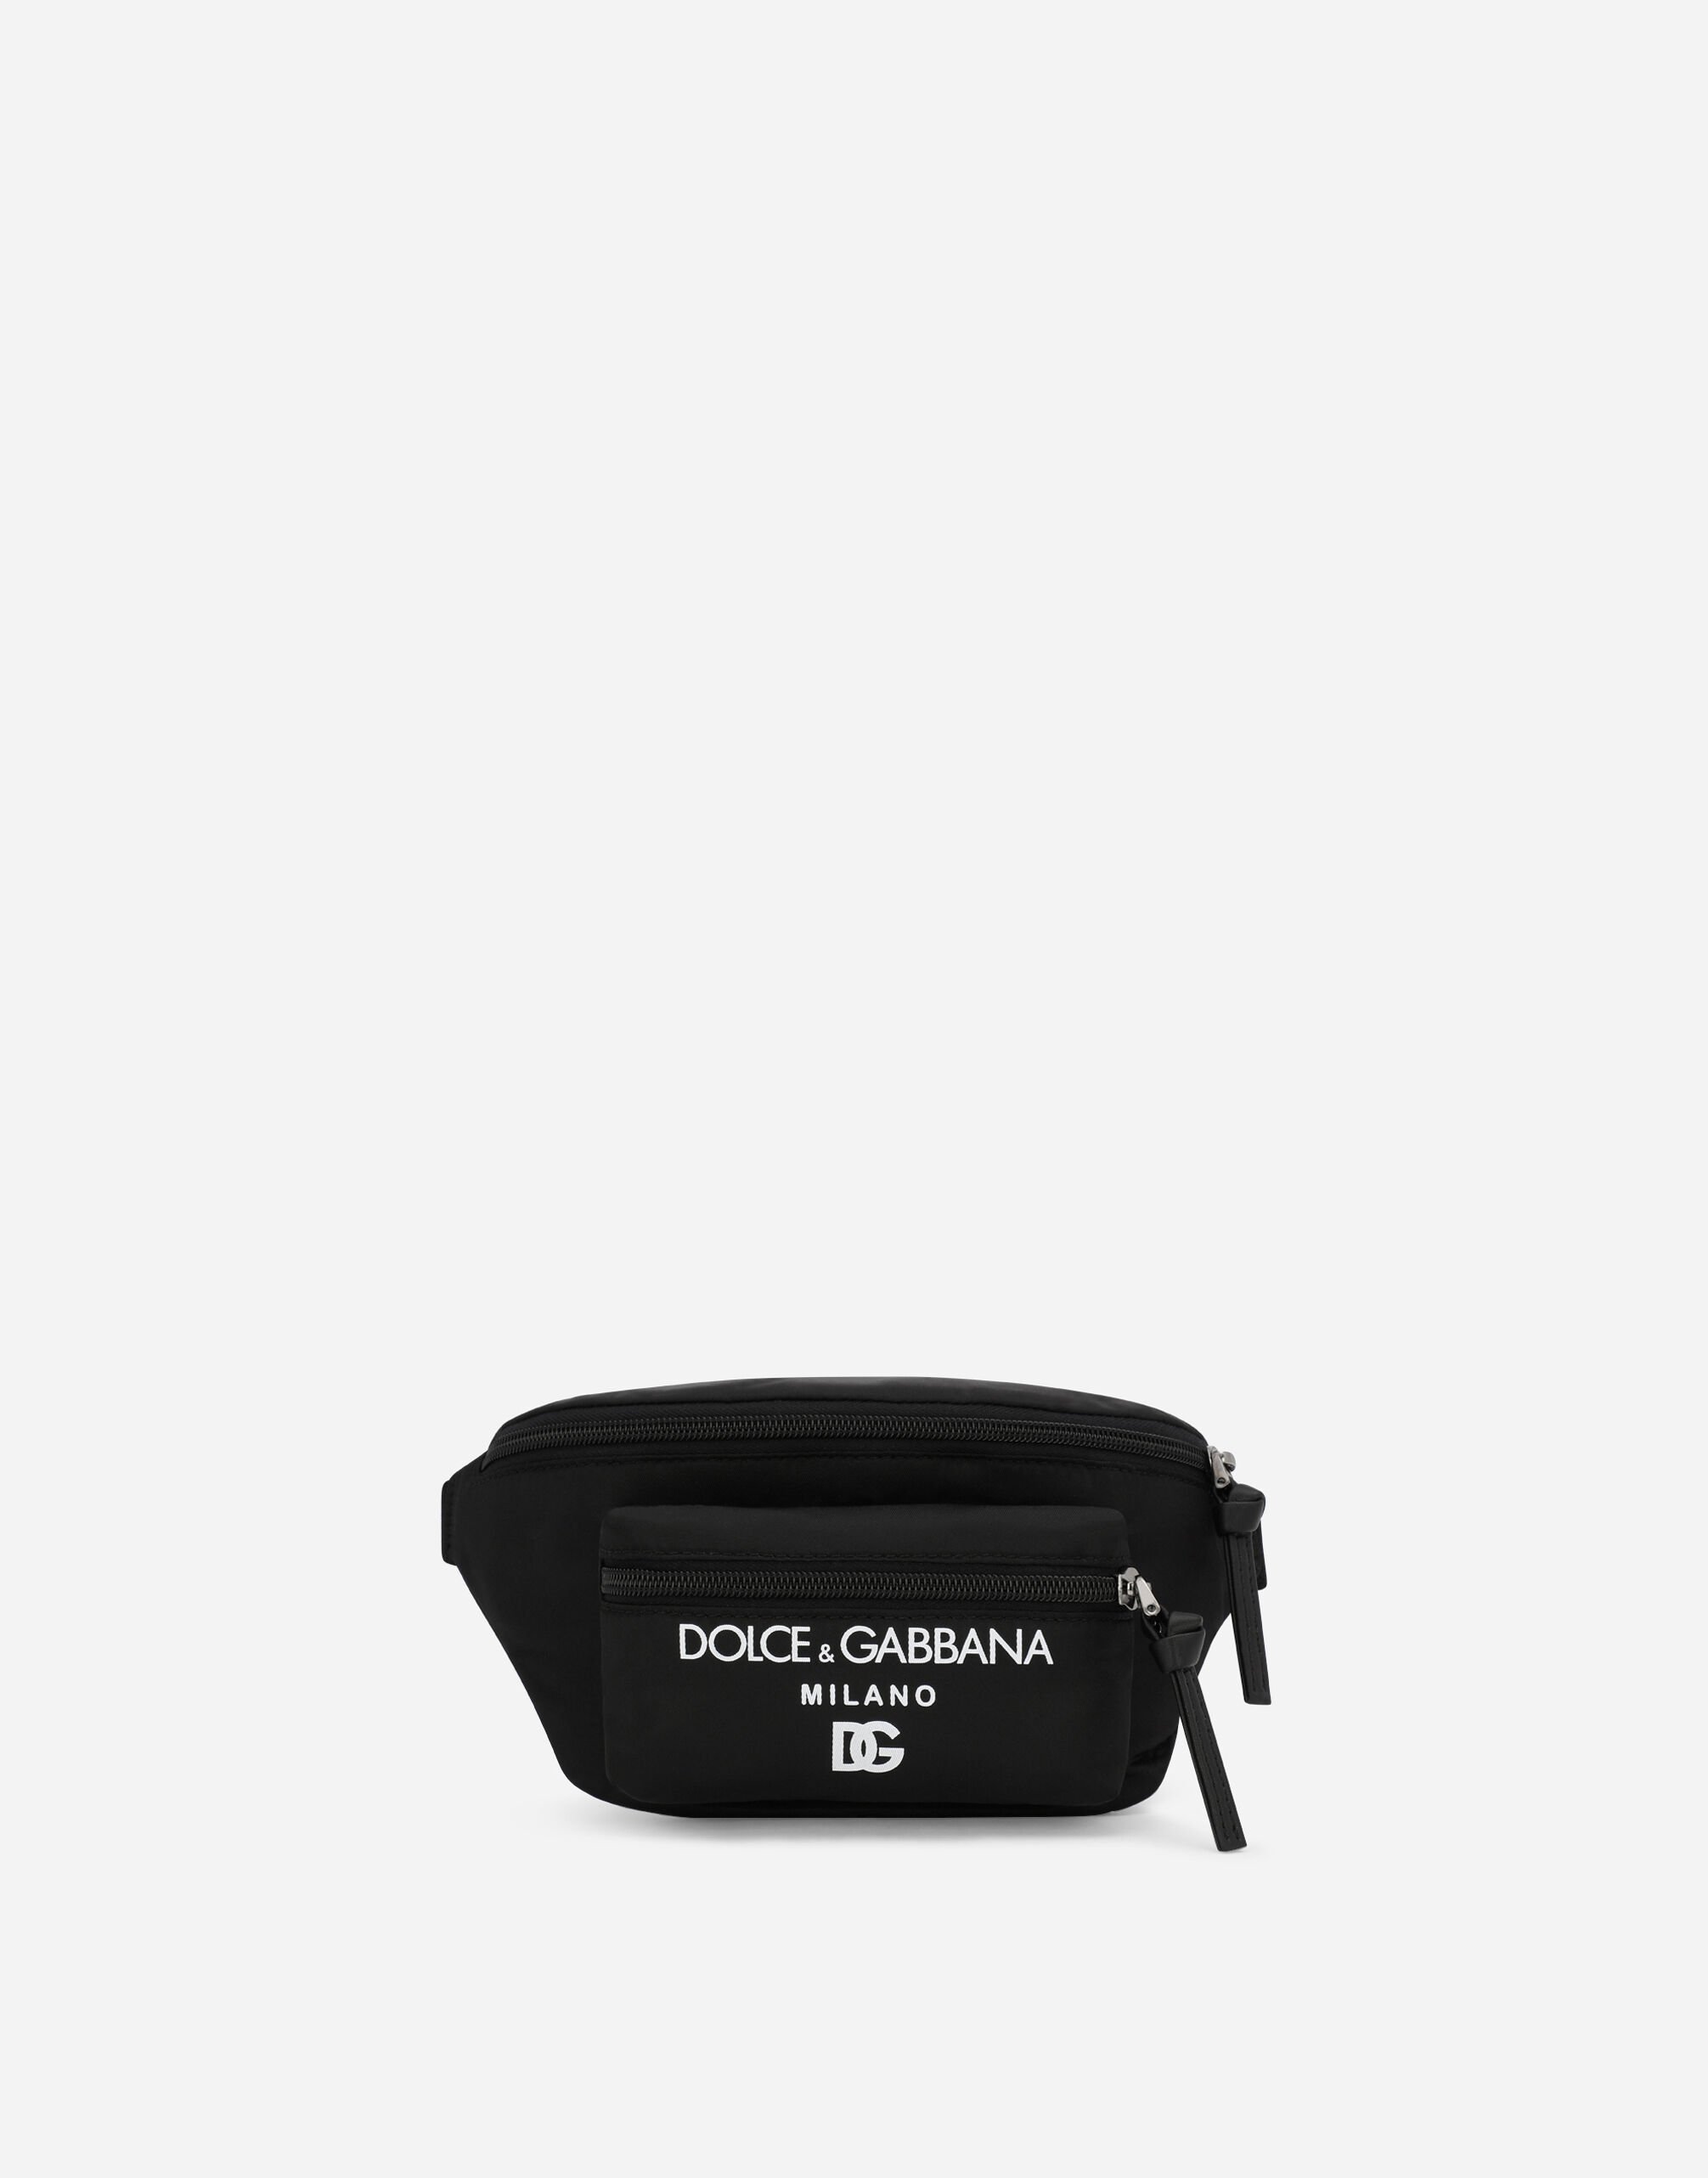 Dolce & Gabbana حقيبة خصر نايلون بطبعة DOLCE&GABBANA ميلانو أبيض LB4H80G7NWB